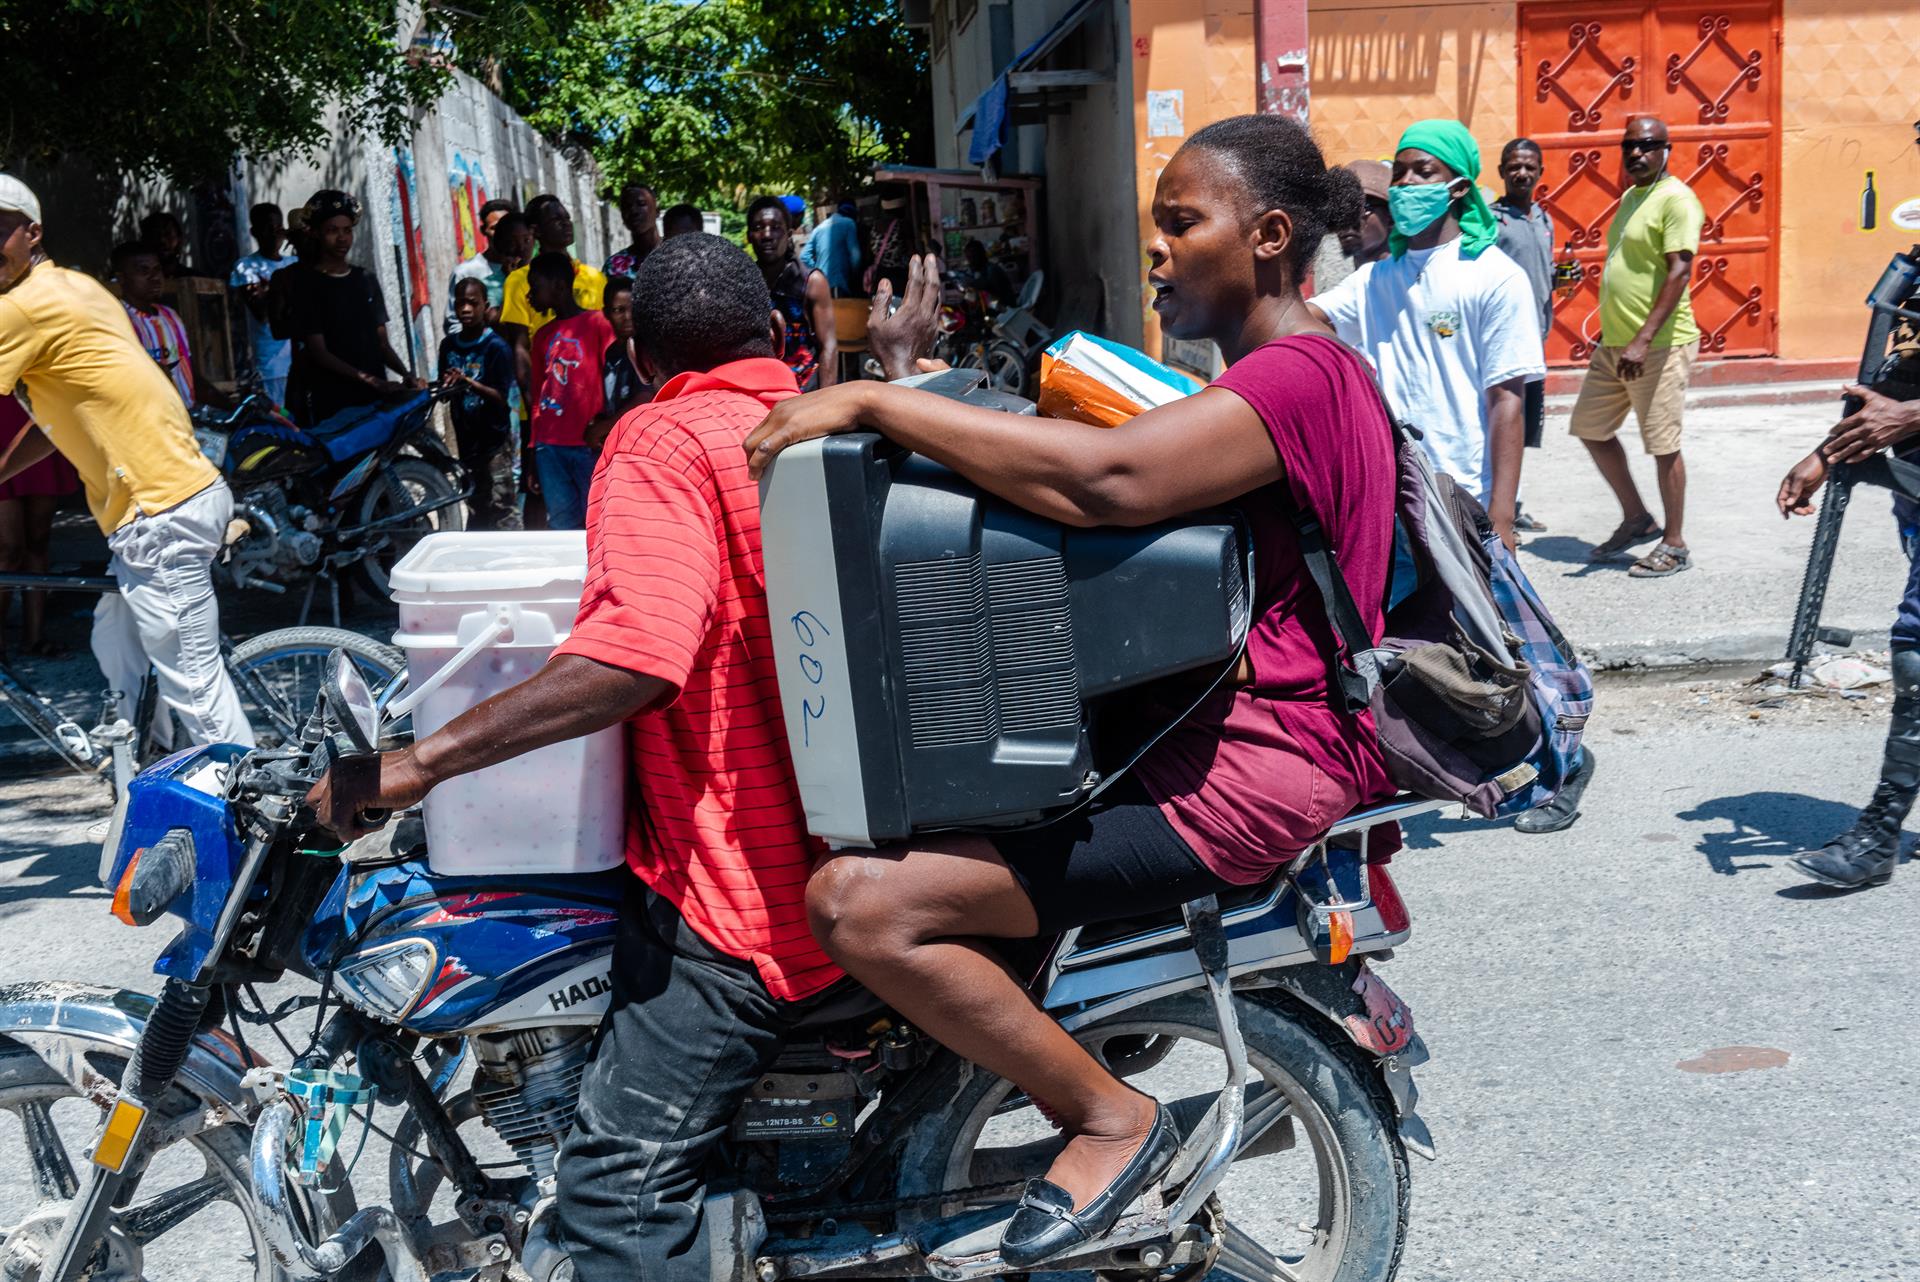 La capital haitiana, paralizada y escenario de manifestaciones y saqueos